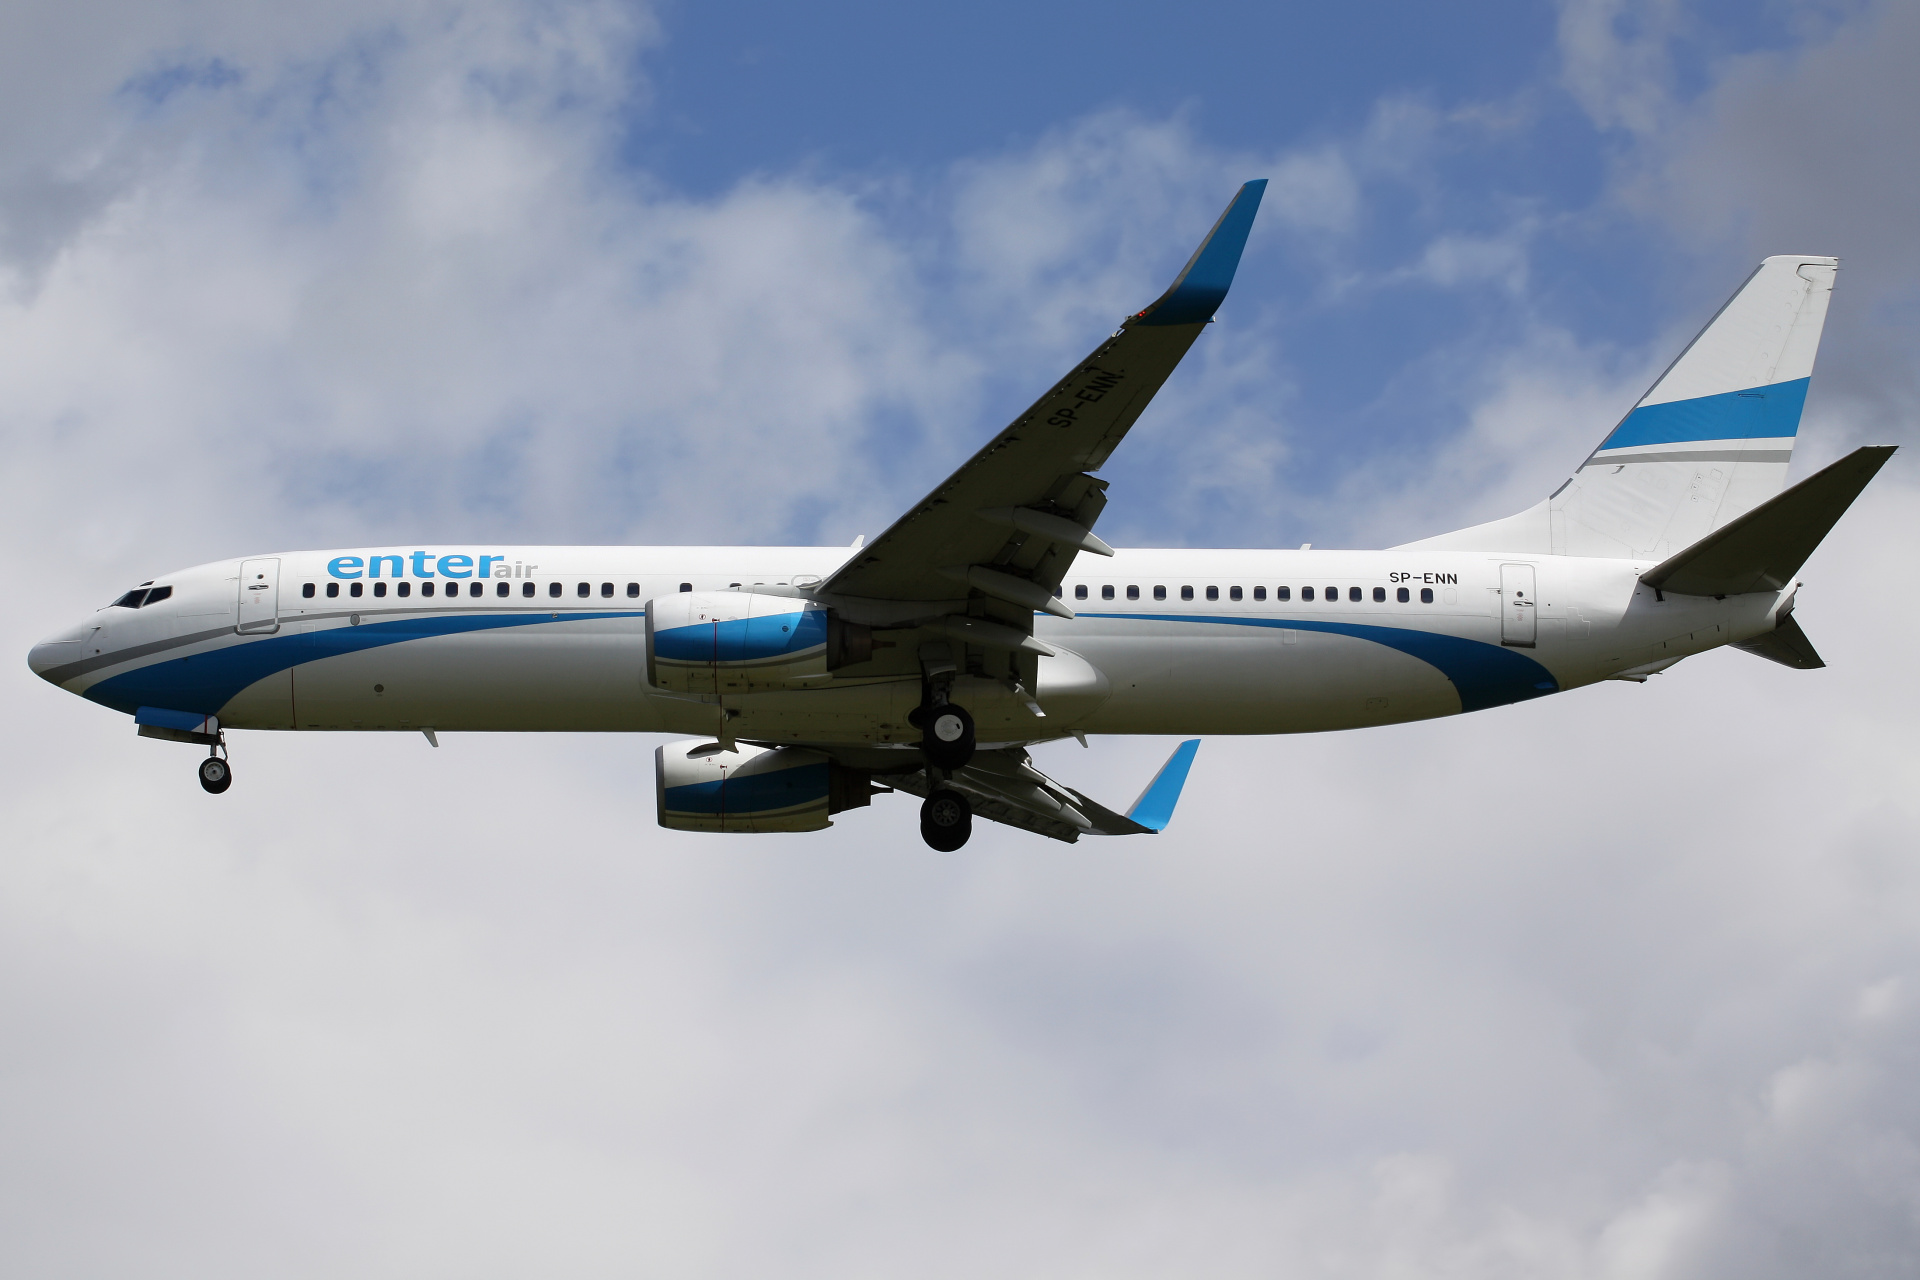 SP-ENN (Samoloty » Spotting na EPWA » Boeing 737-800 » Enter Air)